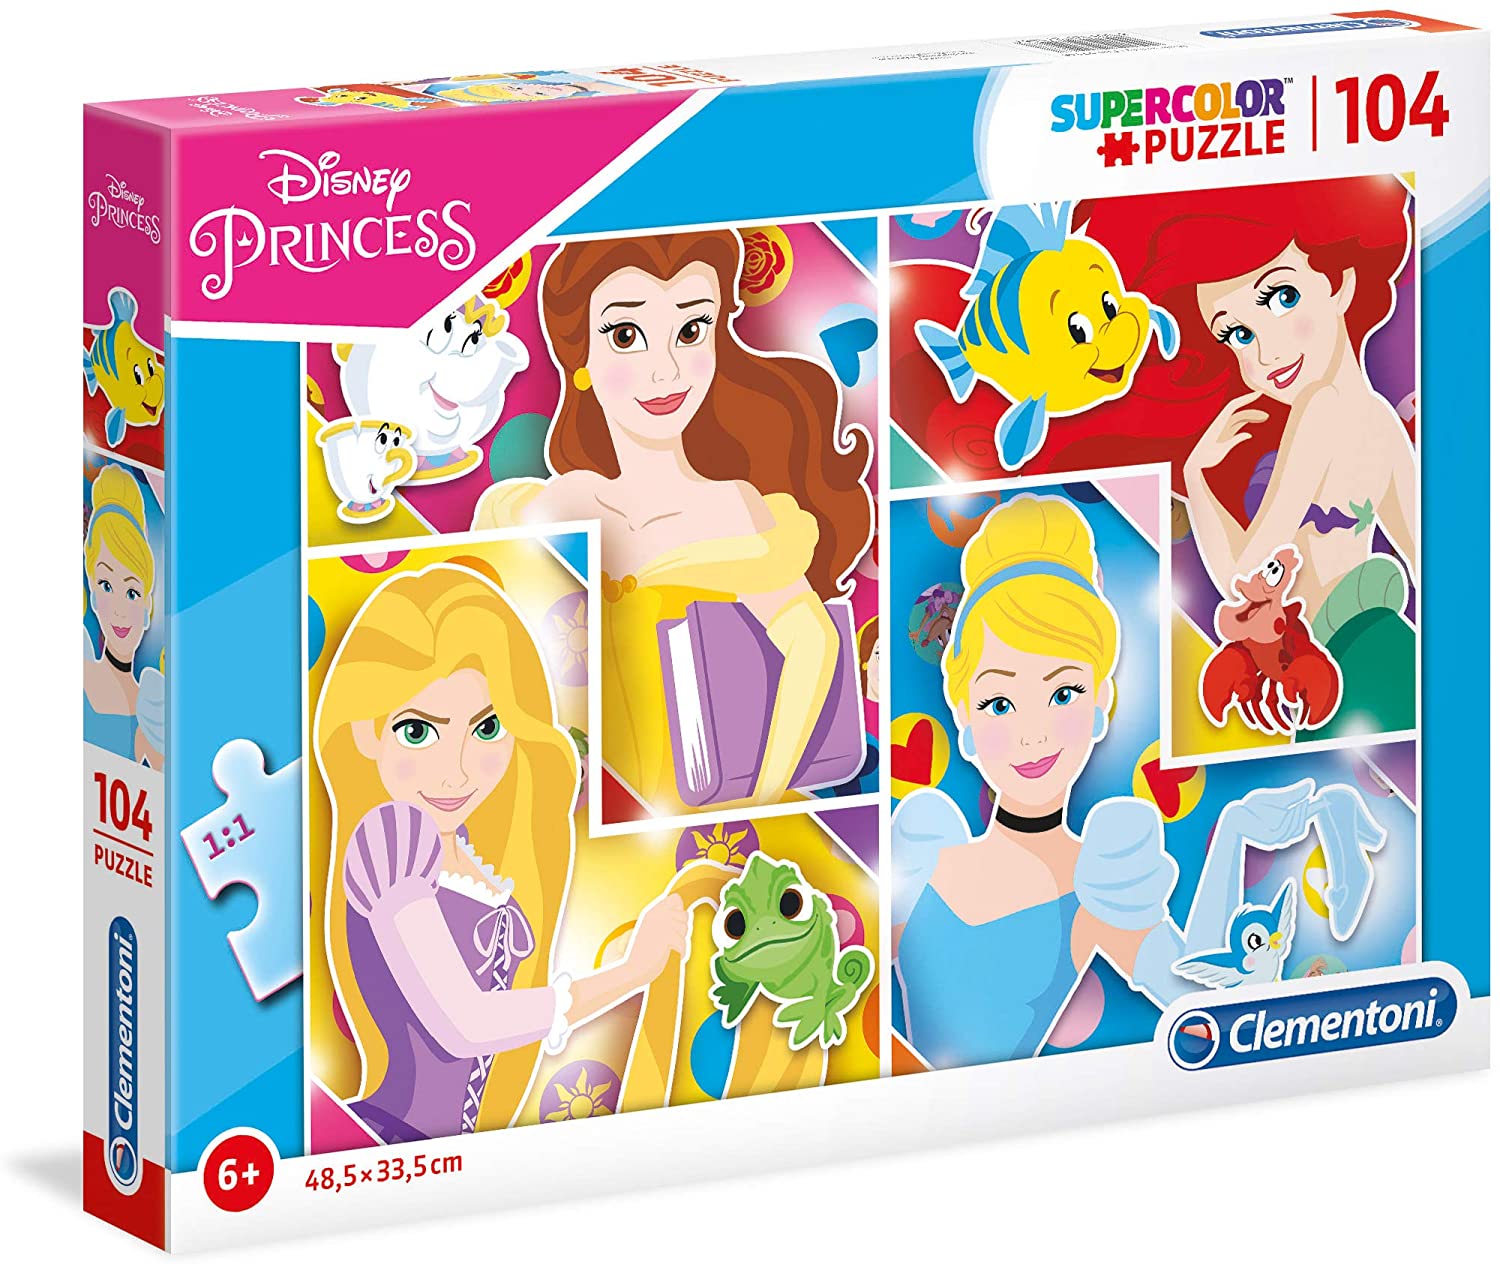 Clementoni 27146 Disney Princess Supercolor Jigsaw Puzzle 104 Pieces For Ag